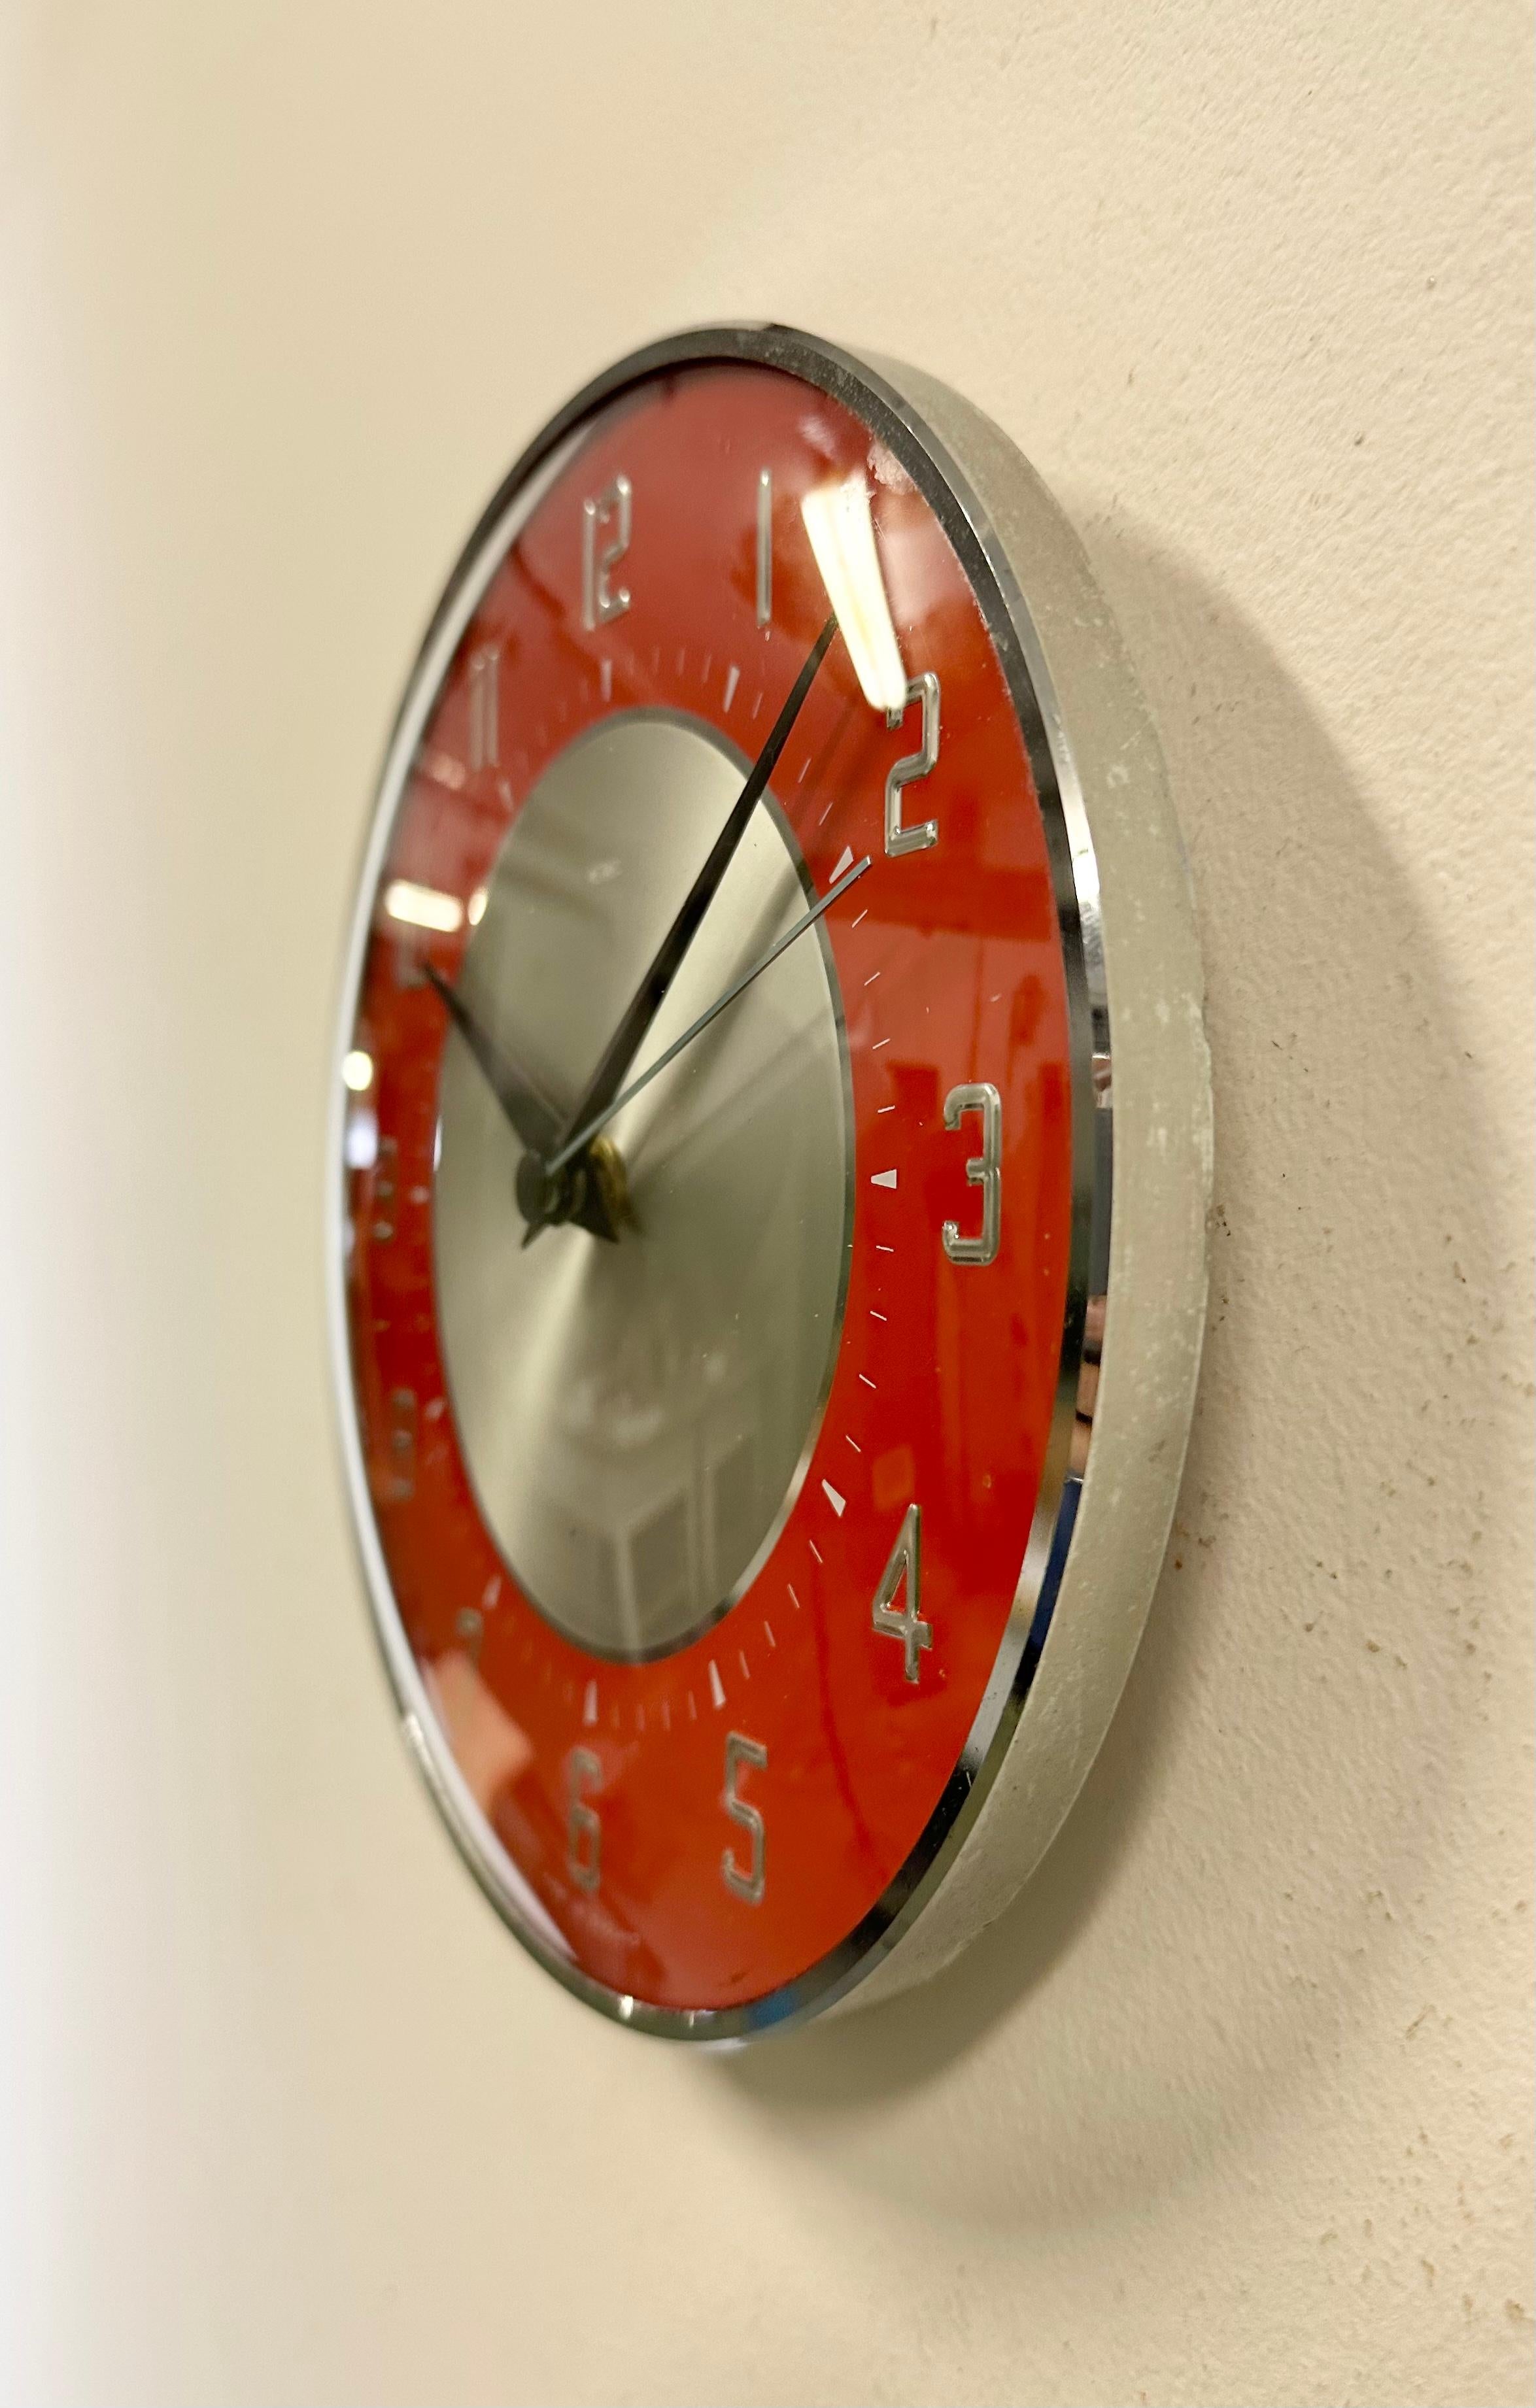 Industrial Vintage Red Wall Clock from Metamec, 1970s